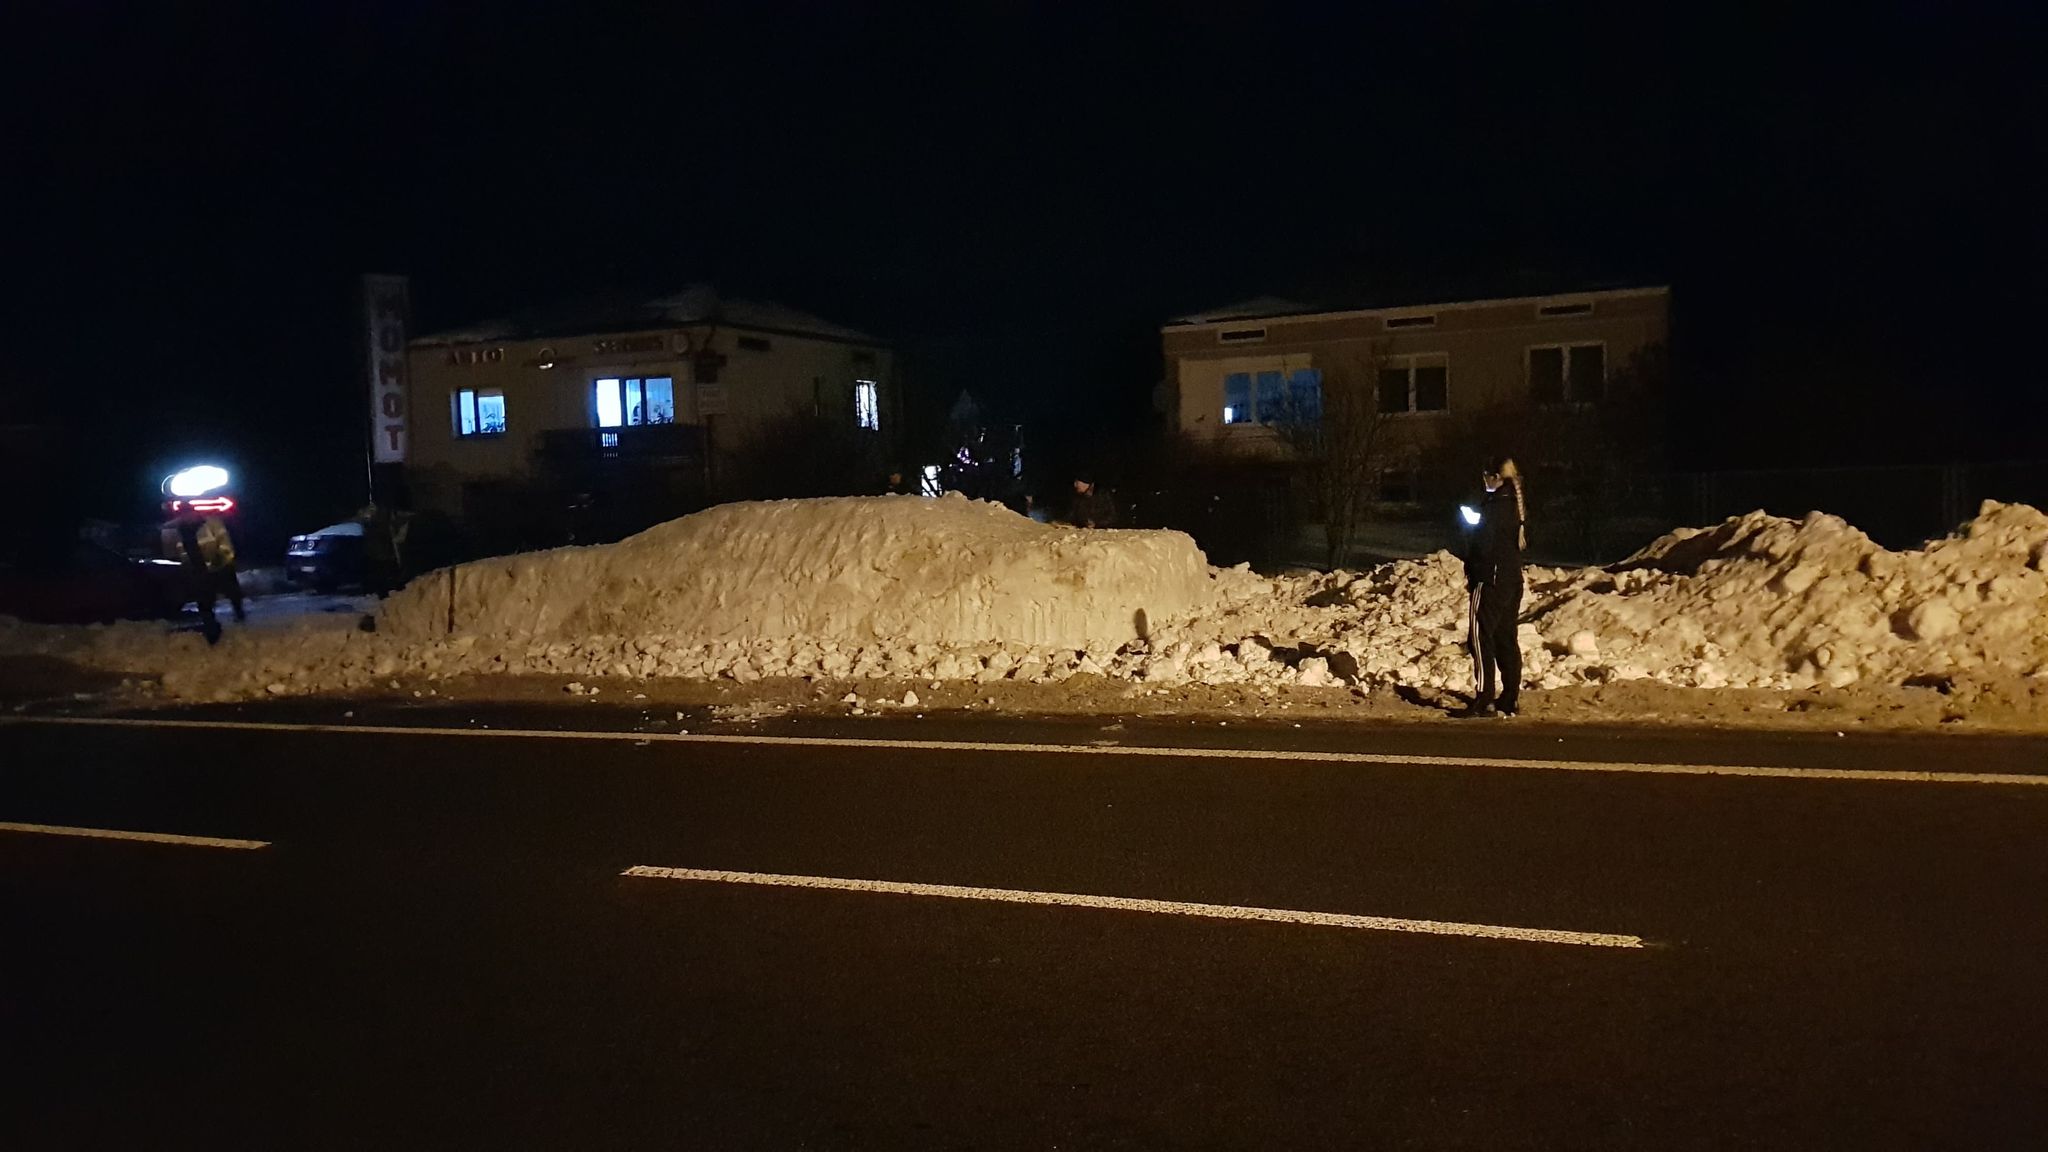 Przed warsztatem samochodowym stanął pojazd ze śniegu (zdjęcia)